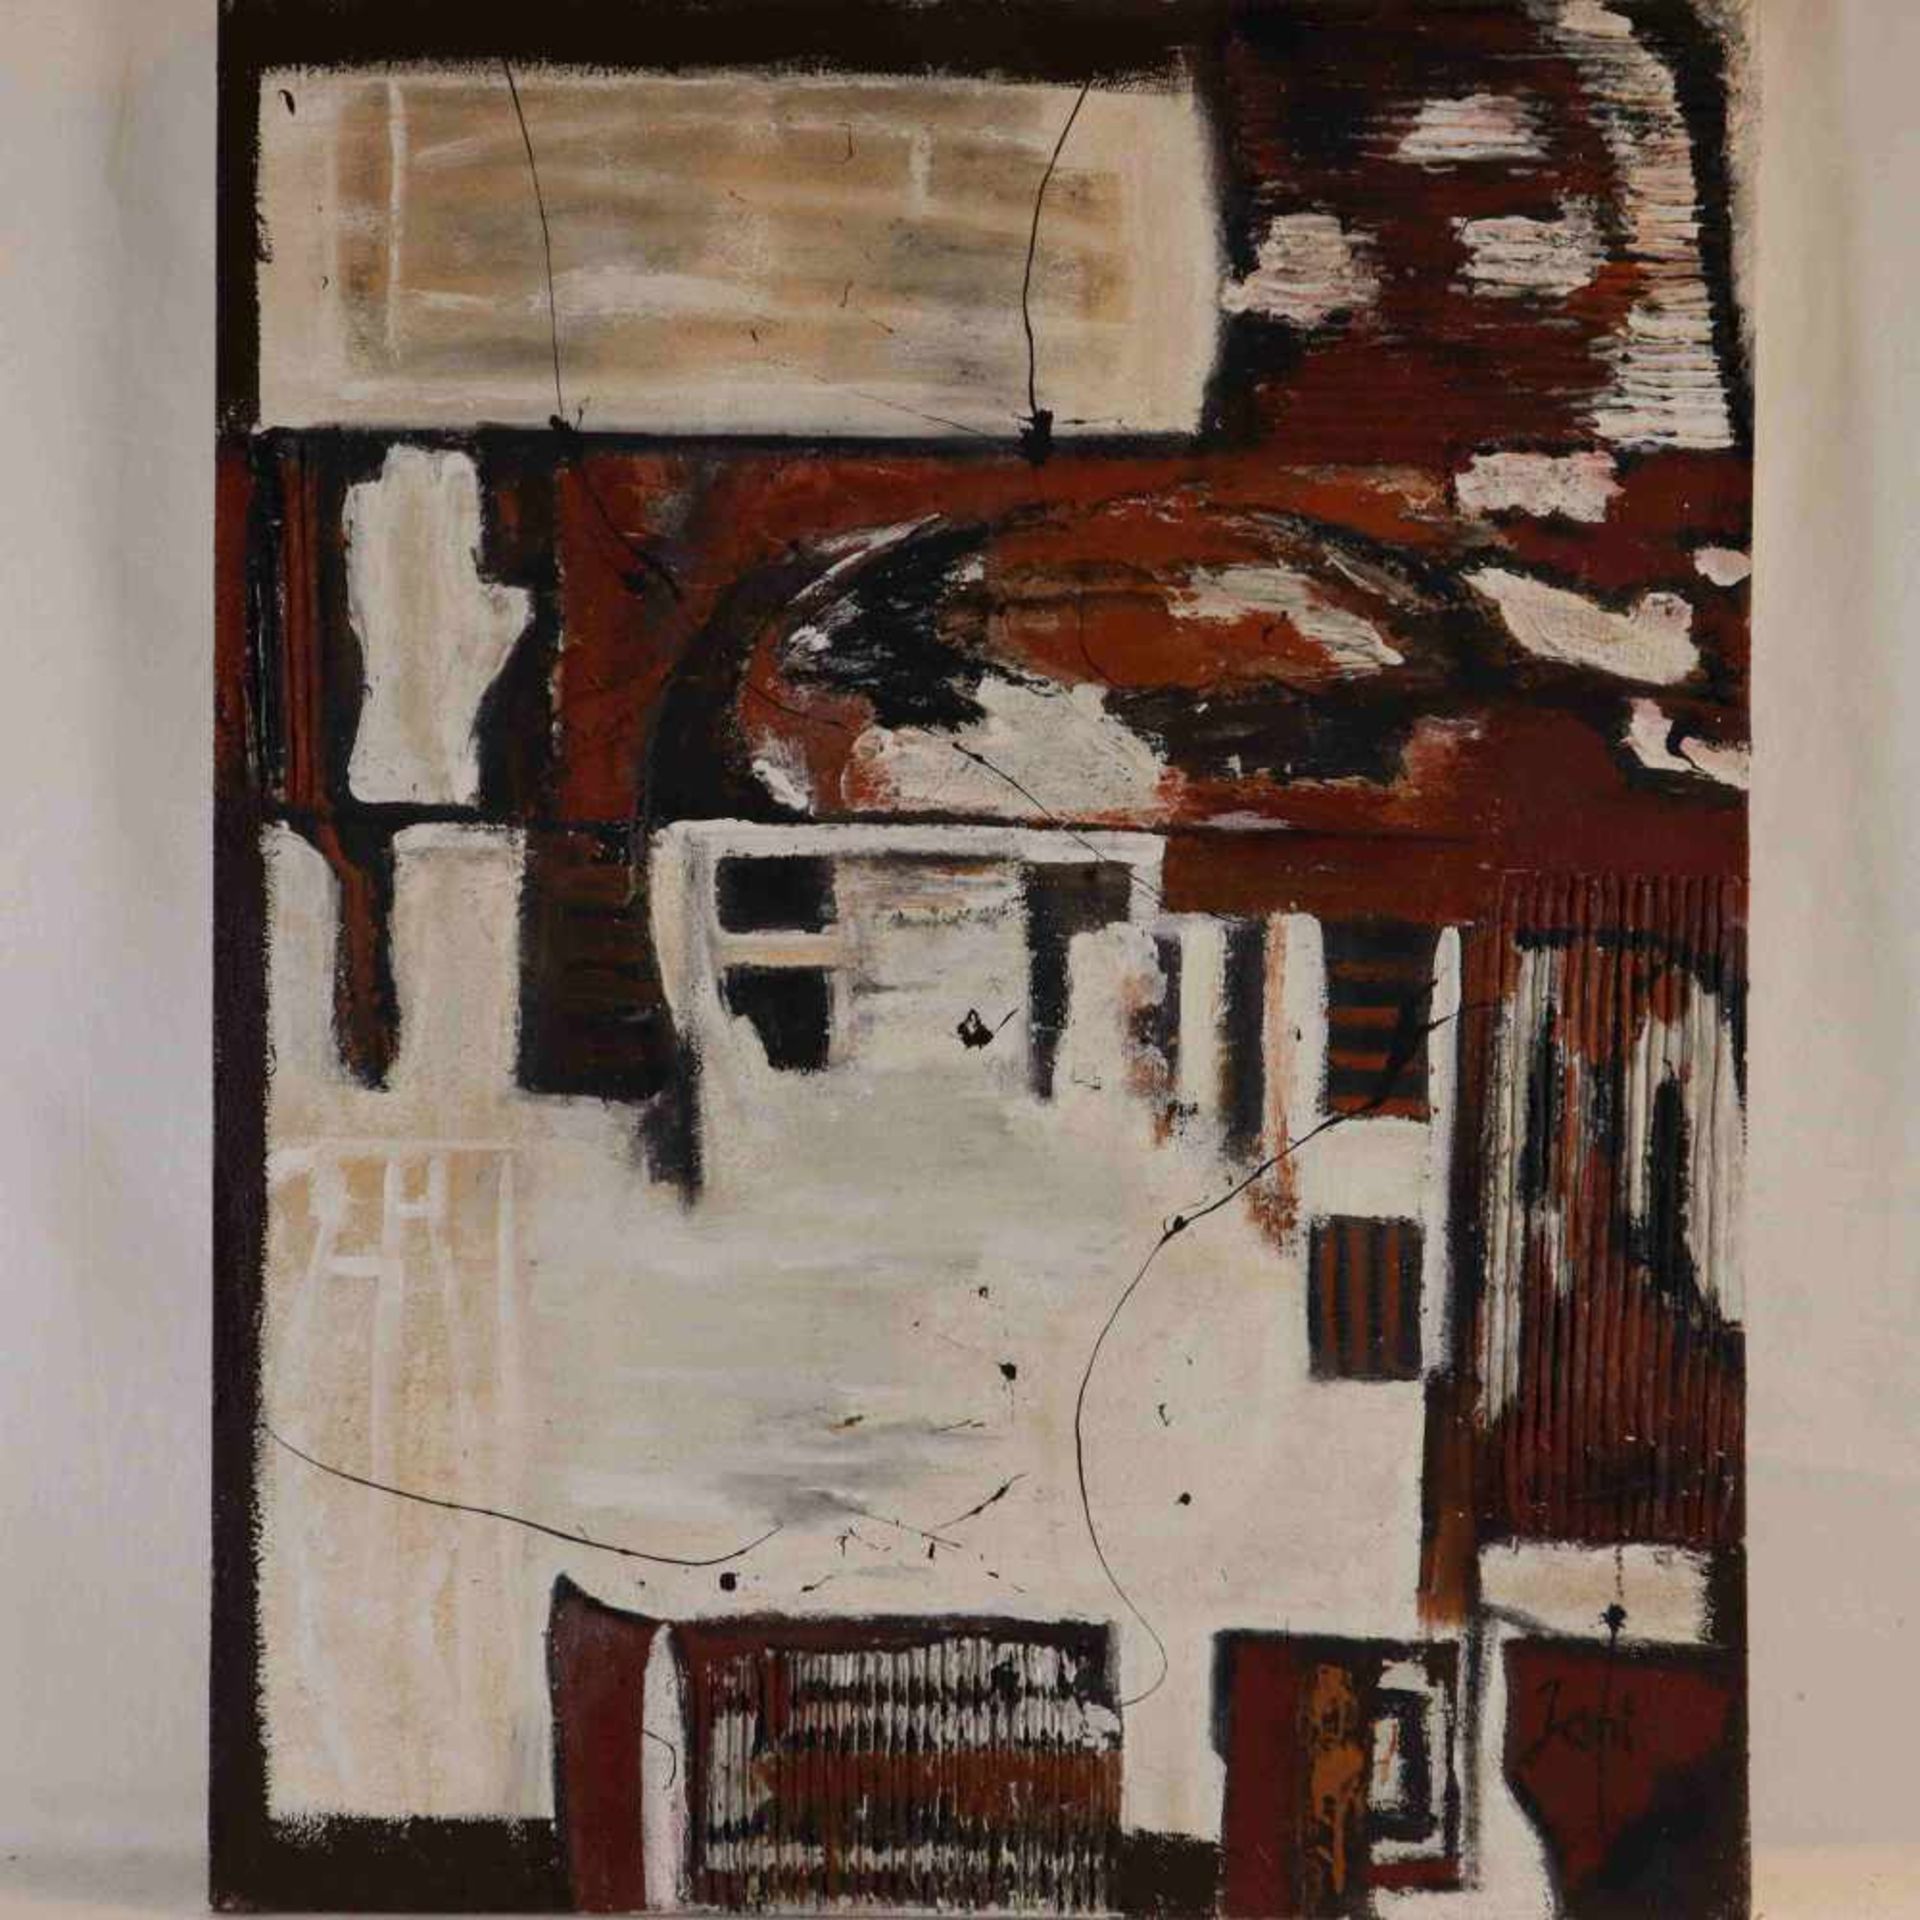 Jani - "Buildings", Acryl und Collage auf Leinwand, unten rechts signiert, ca.100x80cm, ungerahmt